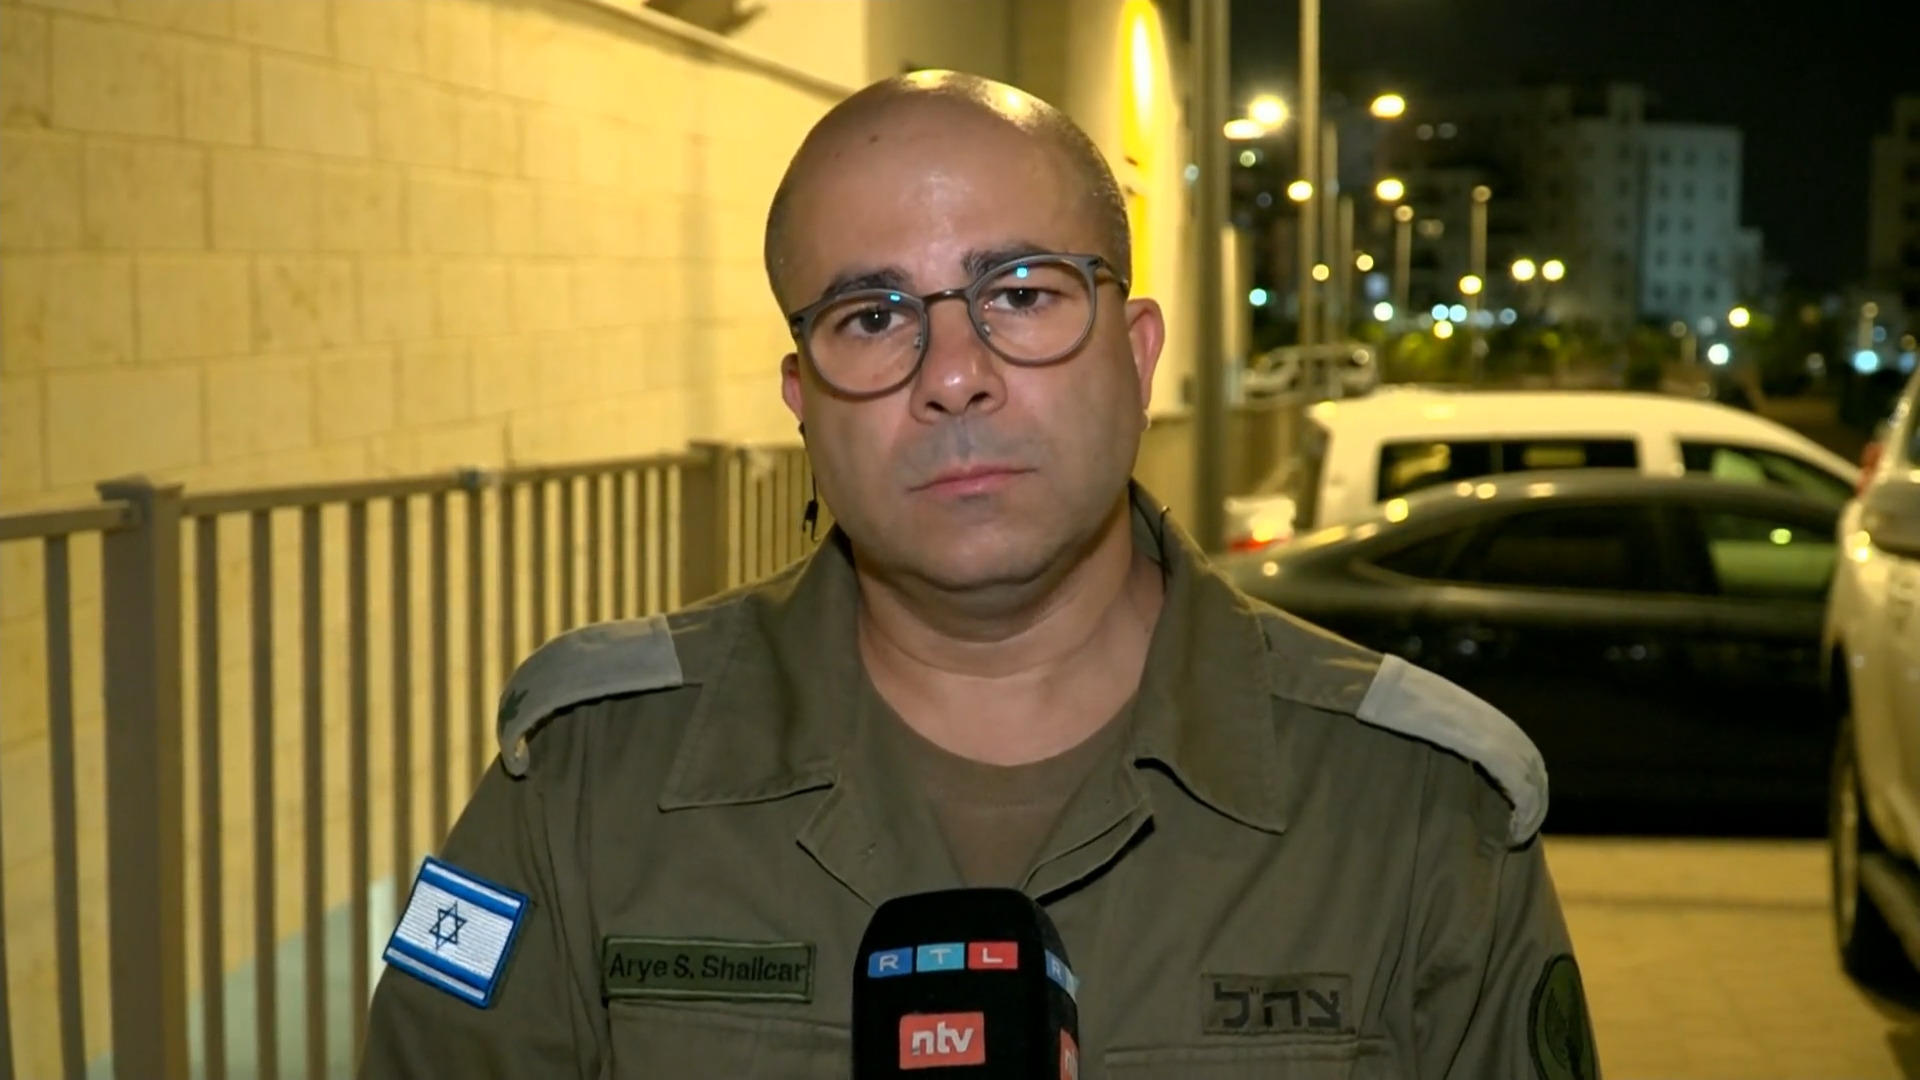 Das sind die Ziele der Bodenoffensive Sprecher der israelischen Armee im RTL-Interview